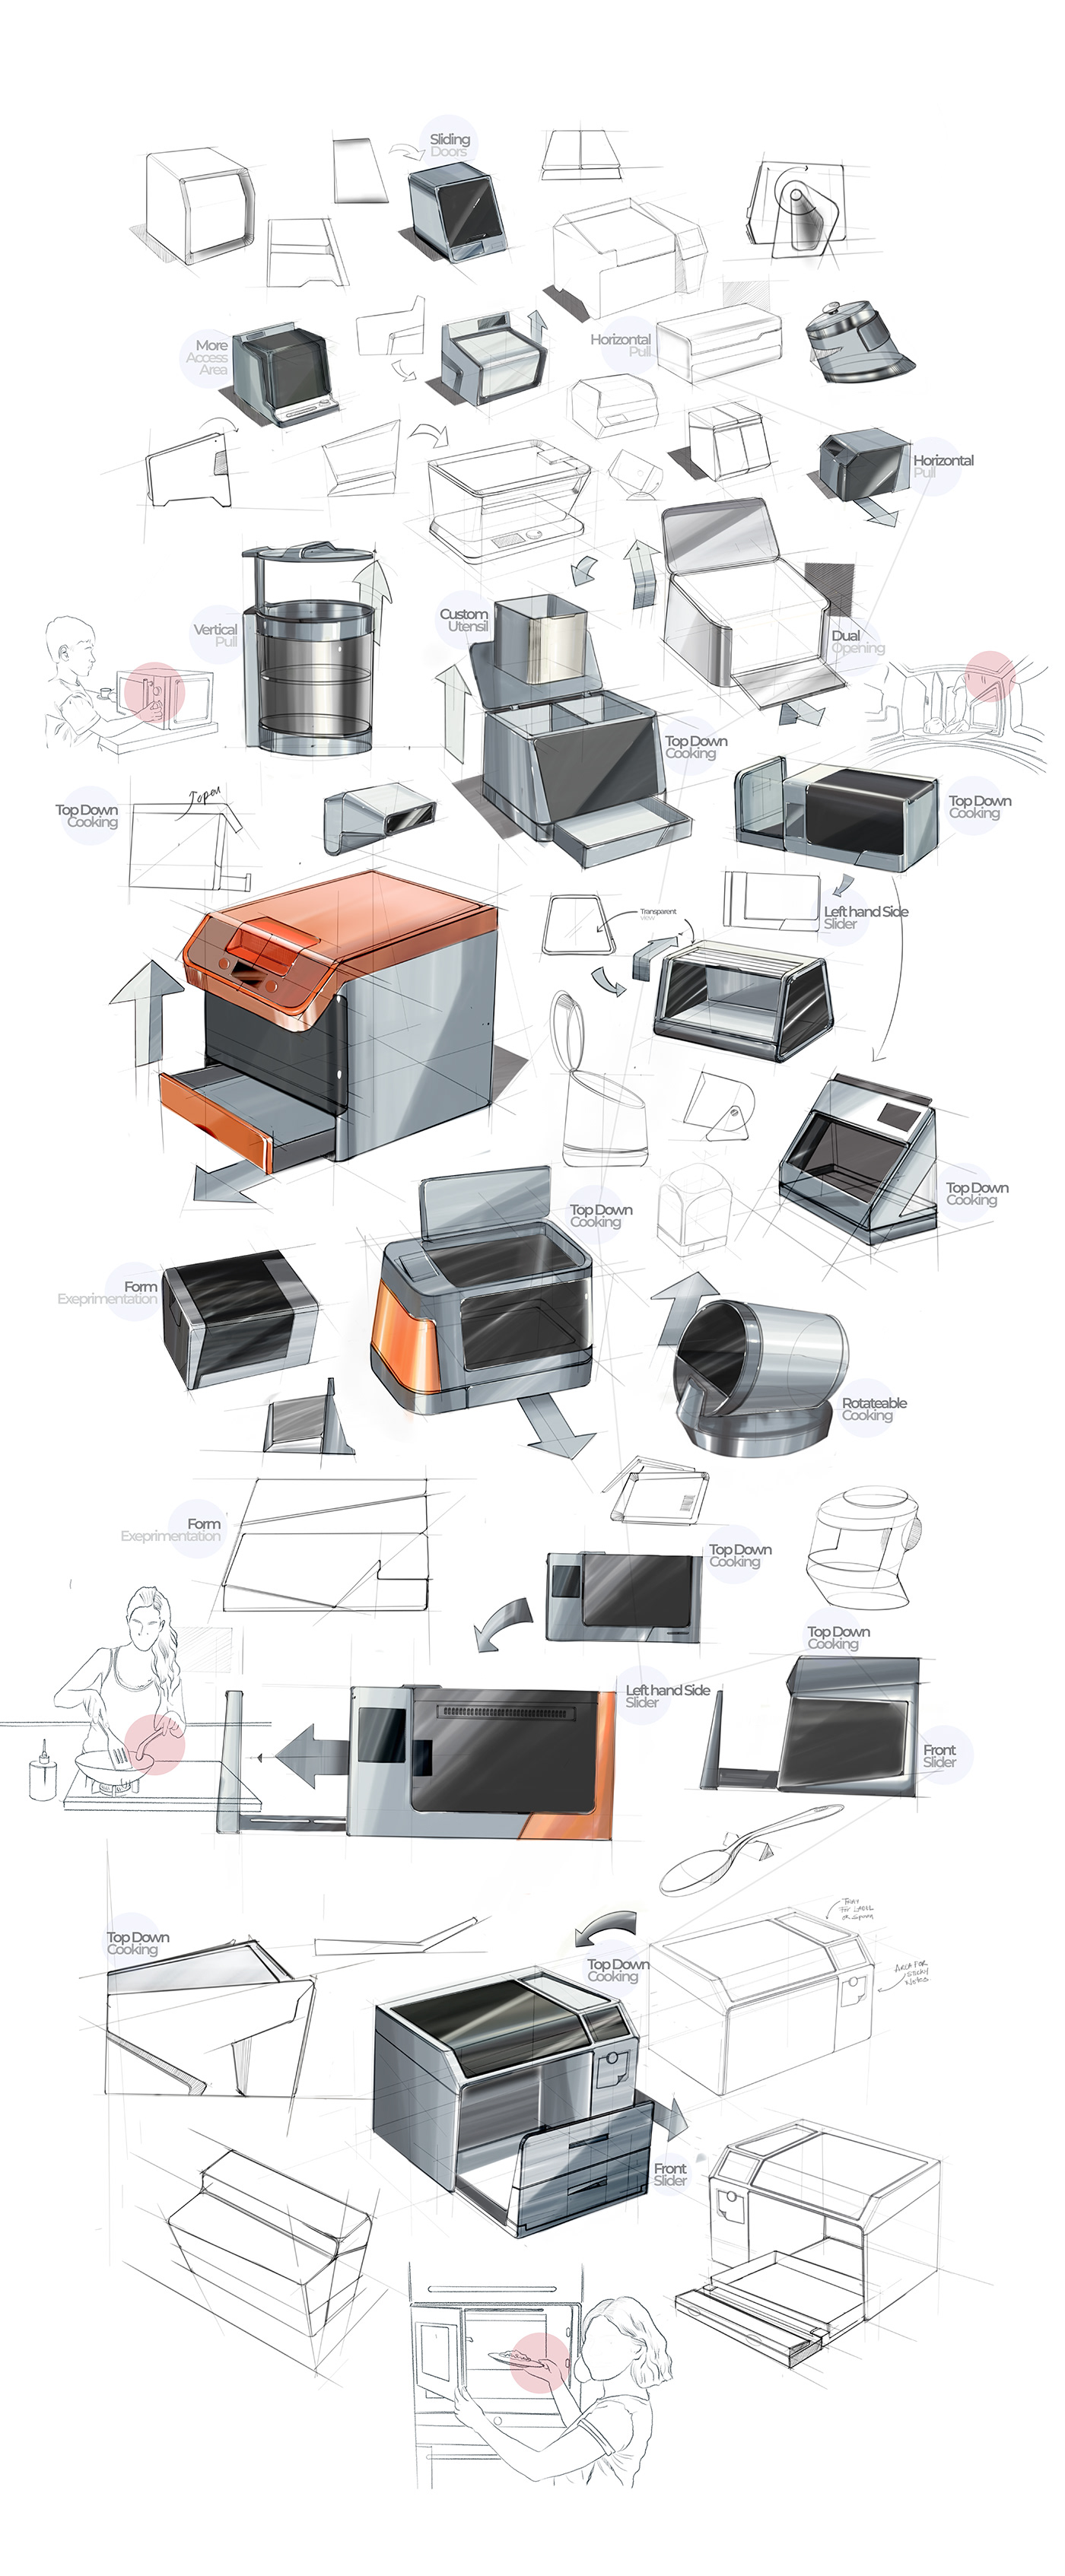 3D blender ideation industrial design  Interaction design  modern product design  Render sketch visualization